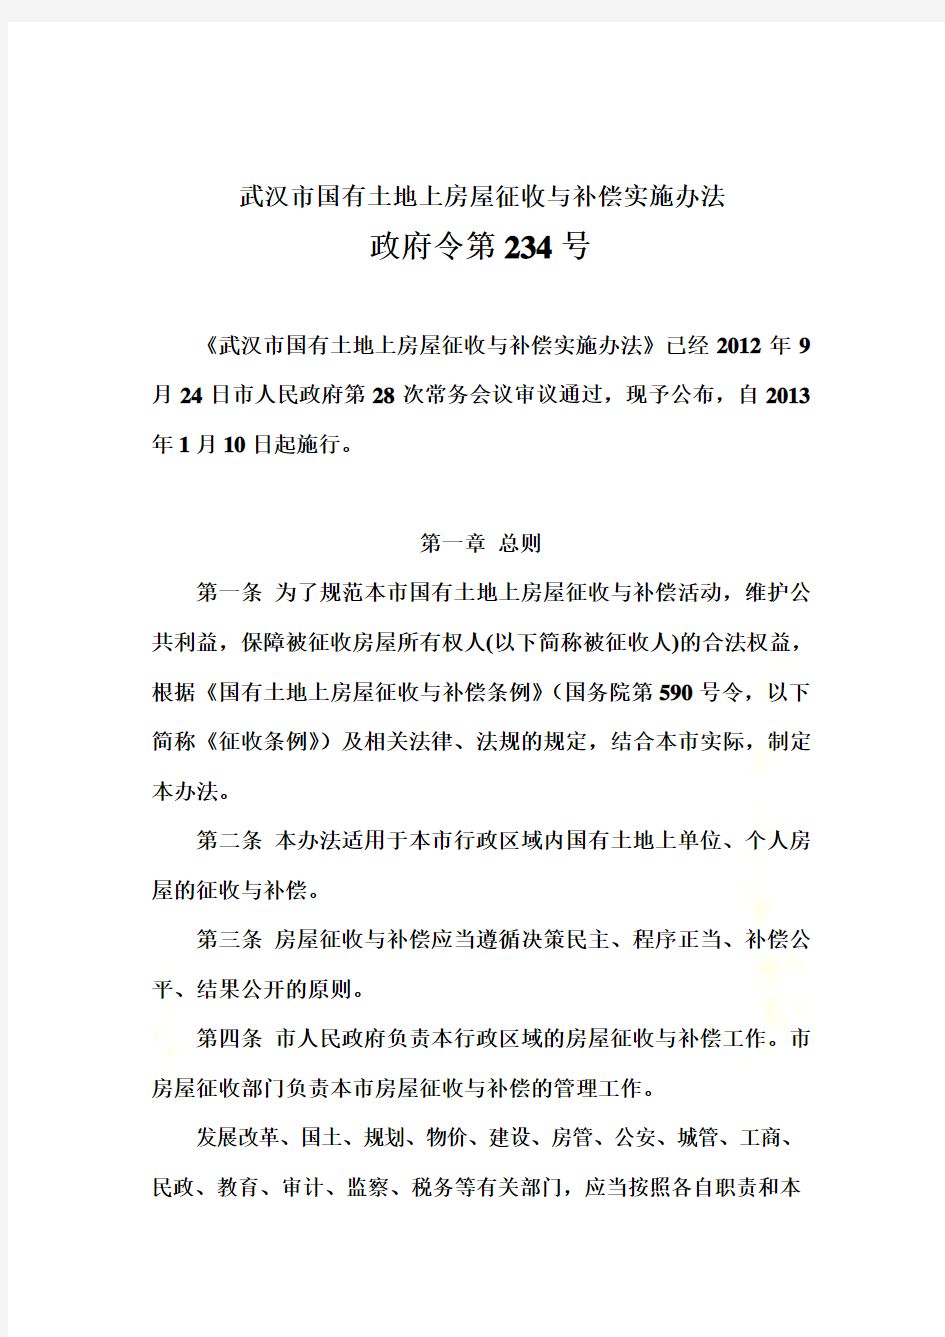 武汉市国有土地上房屋征收与补偿实施办法(政府令第234号)